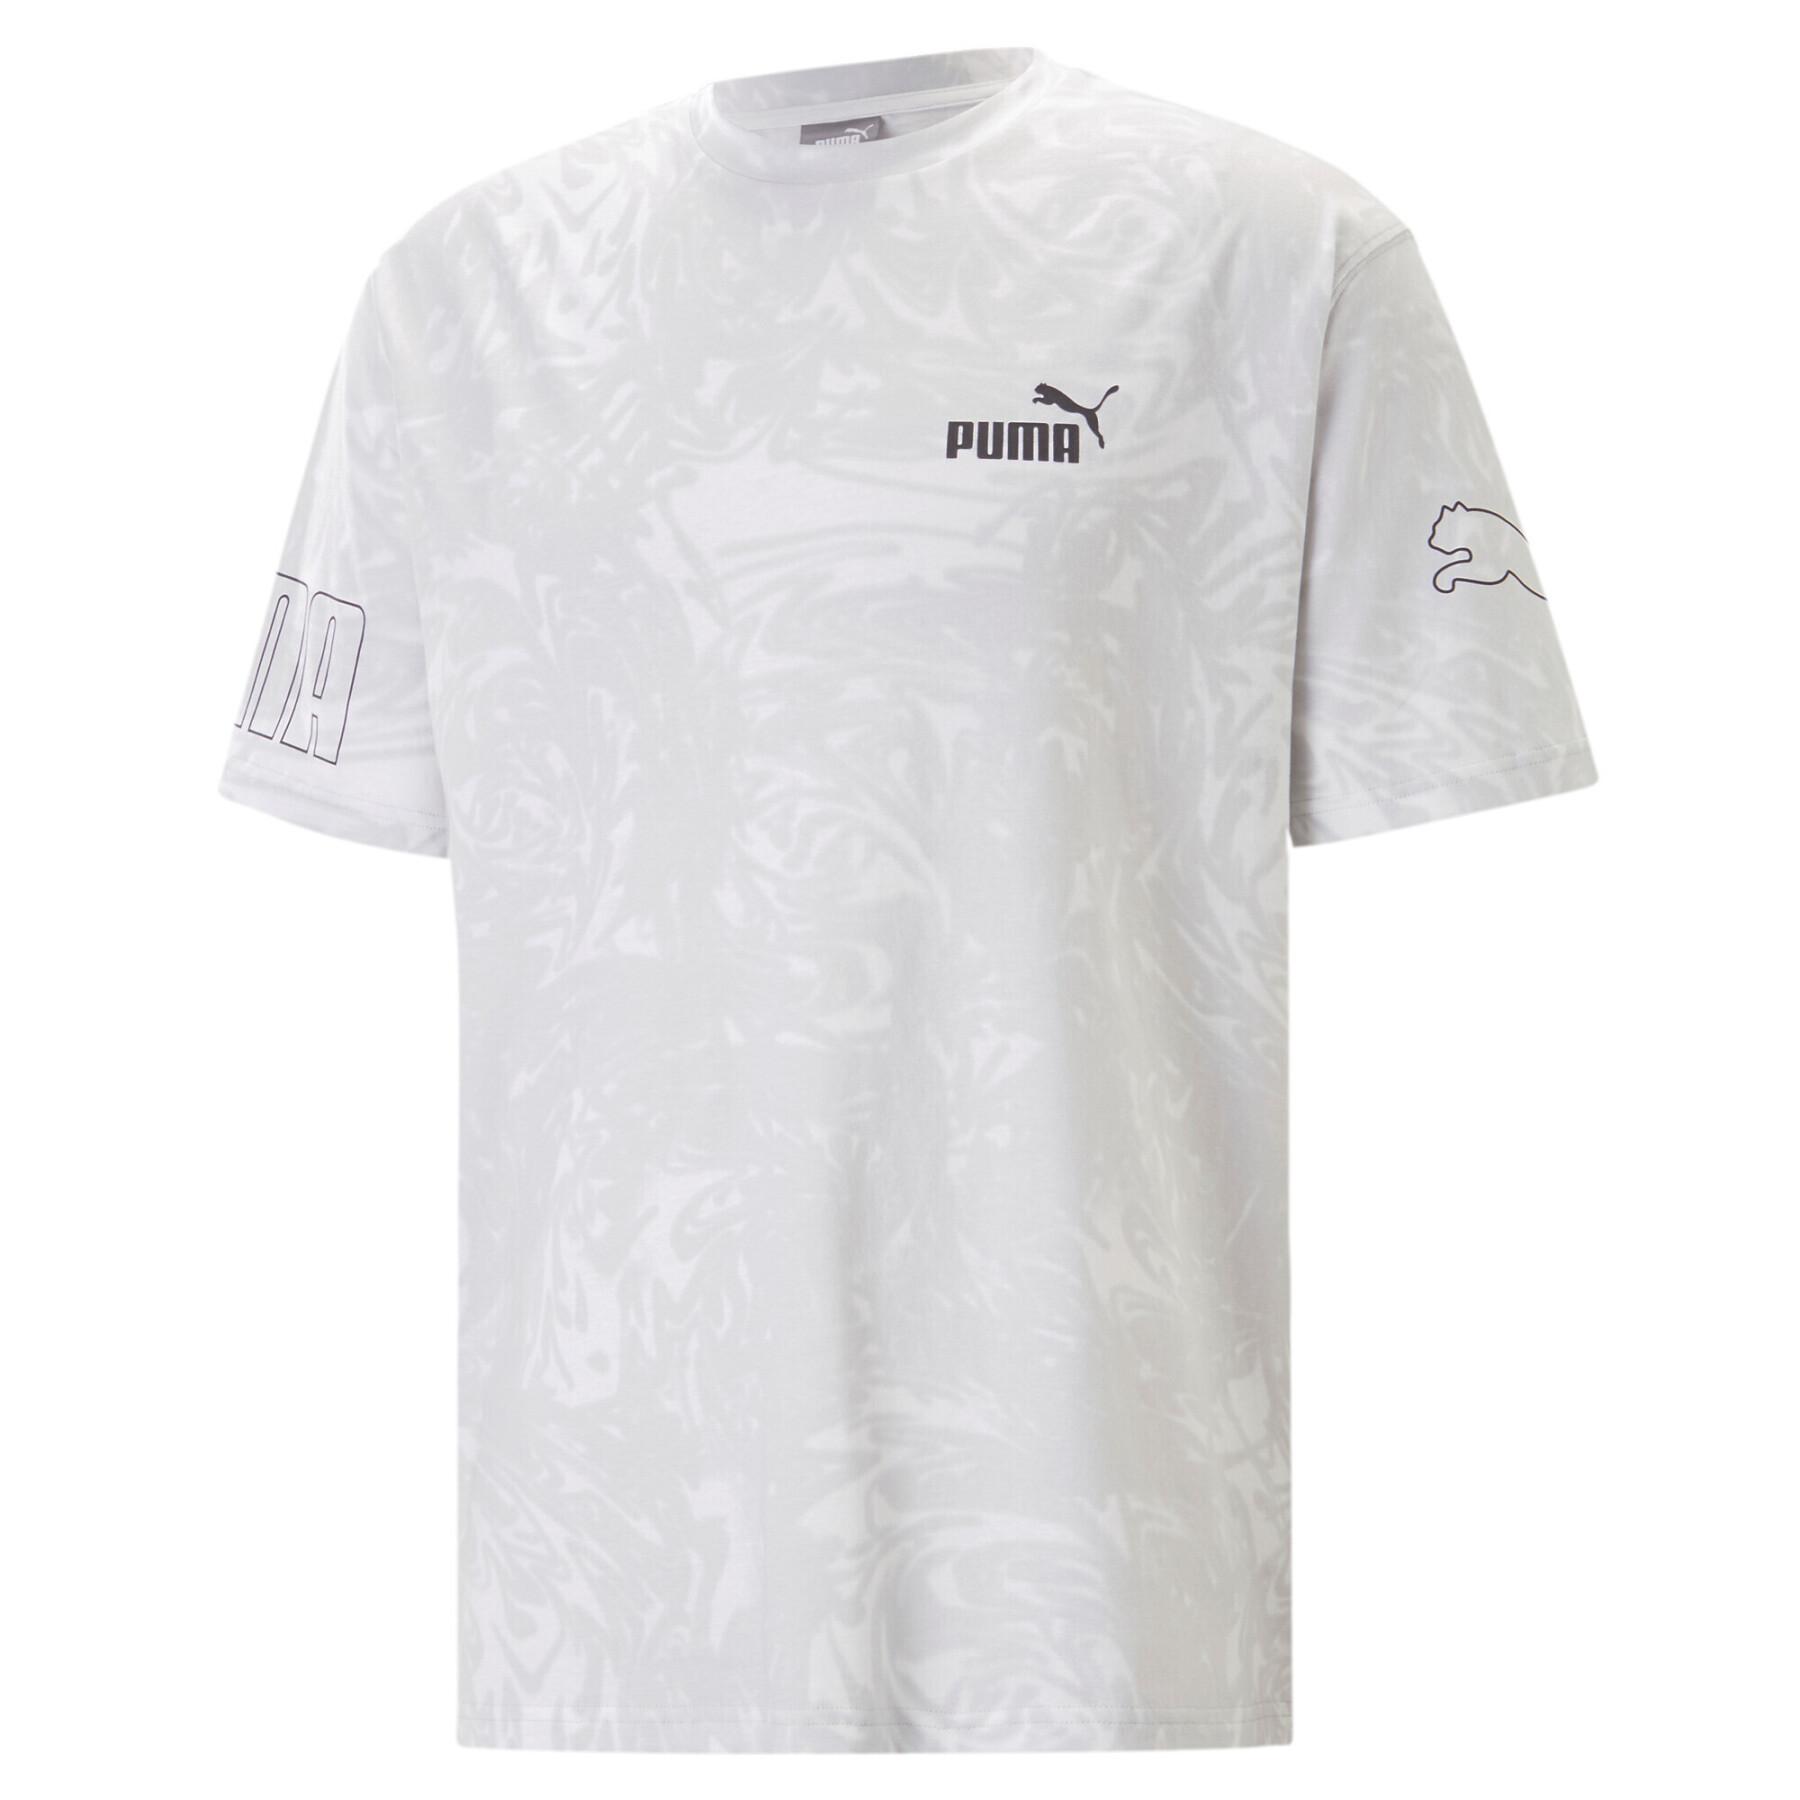 Puma Aop Power Summer T-shirt